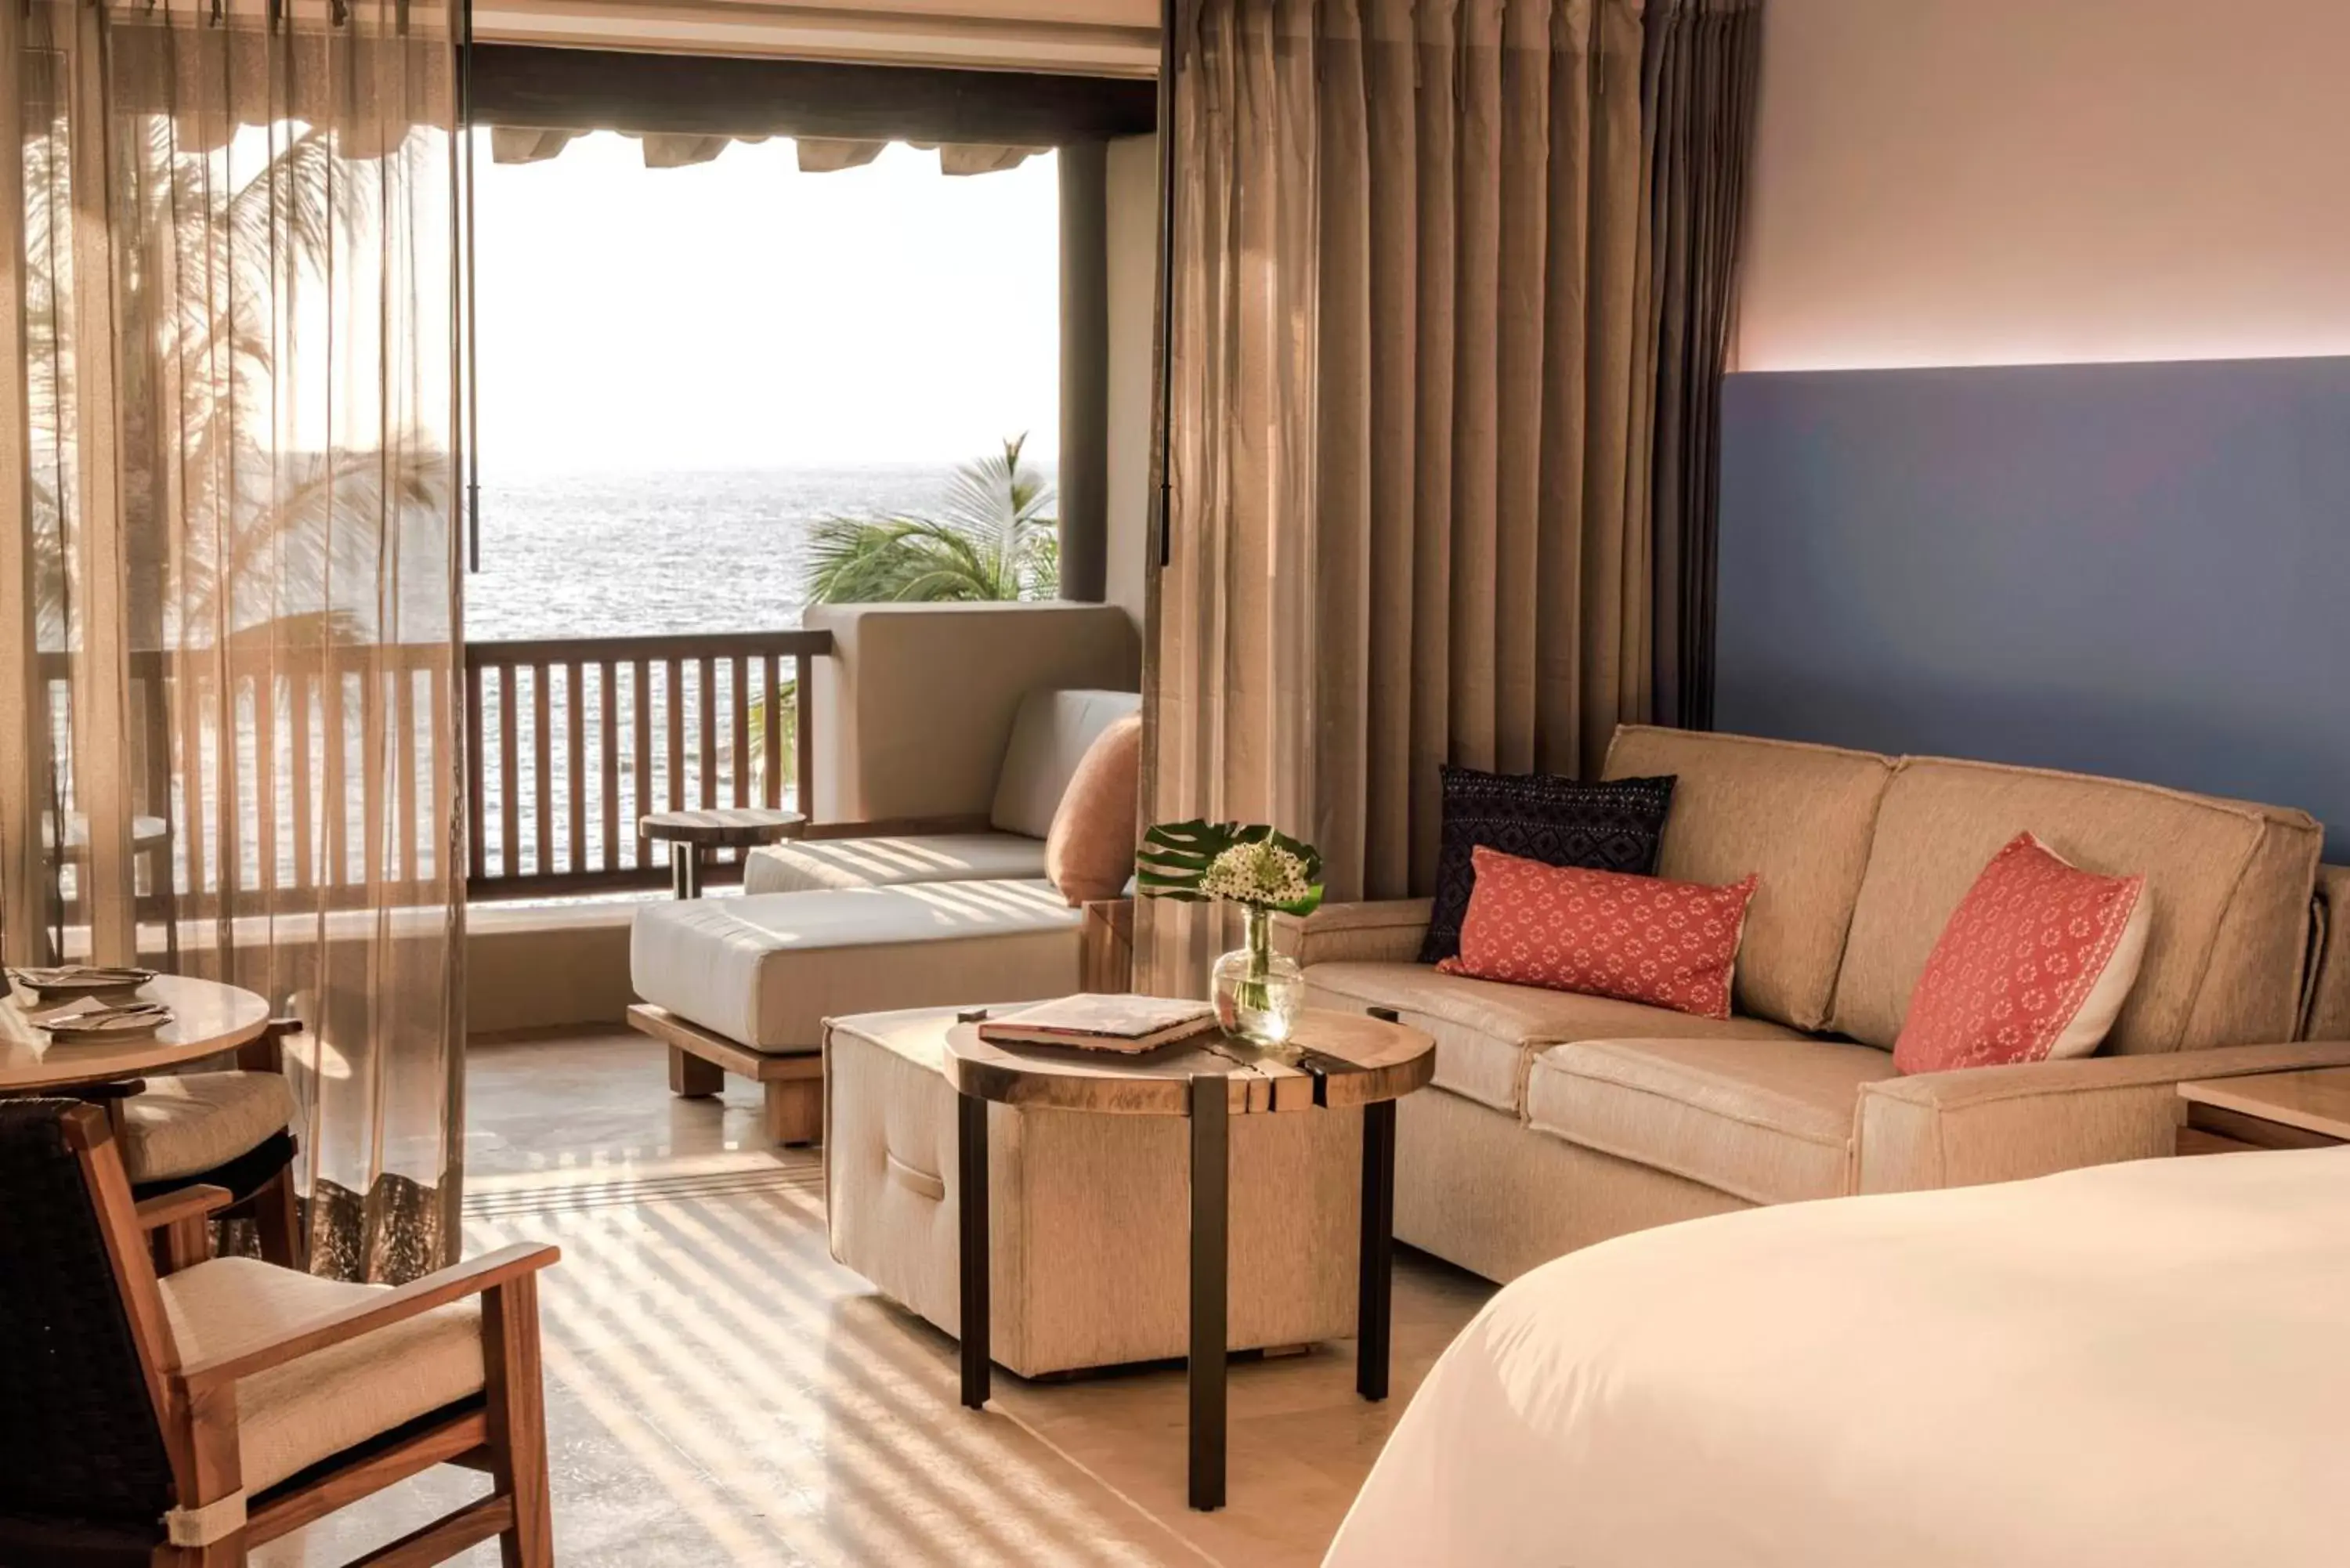 Decorative detail, Seating Area in Four Seasons Resort Punta Mita